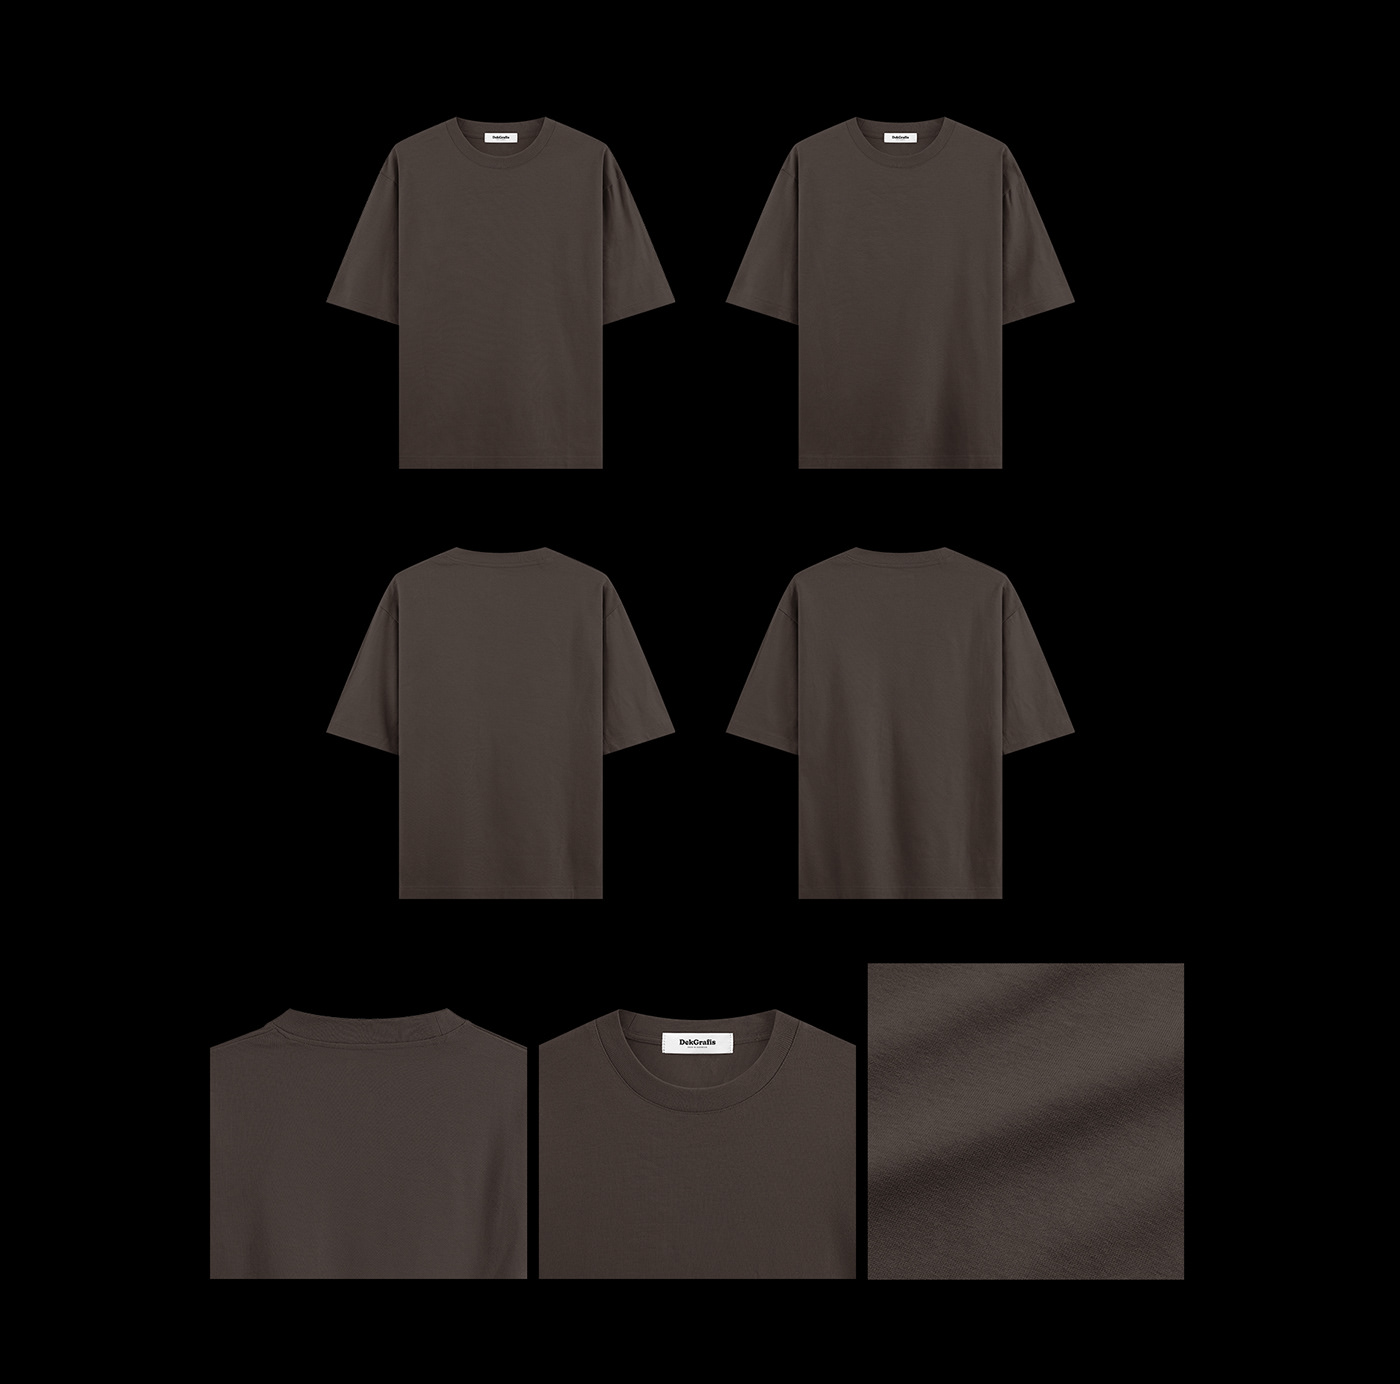 tshirt oversized tshirt tshirt mockup oversize Tshirt Design apparel mockup apparel oversized tshirt mockup